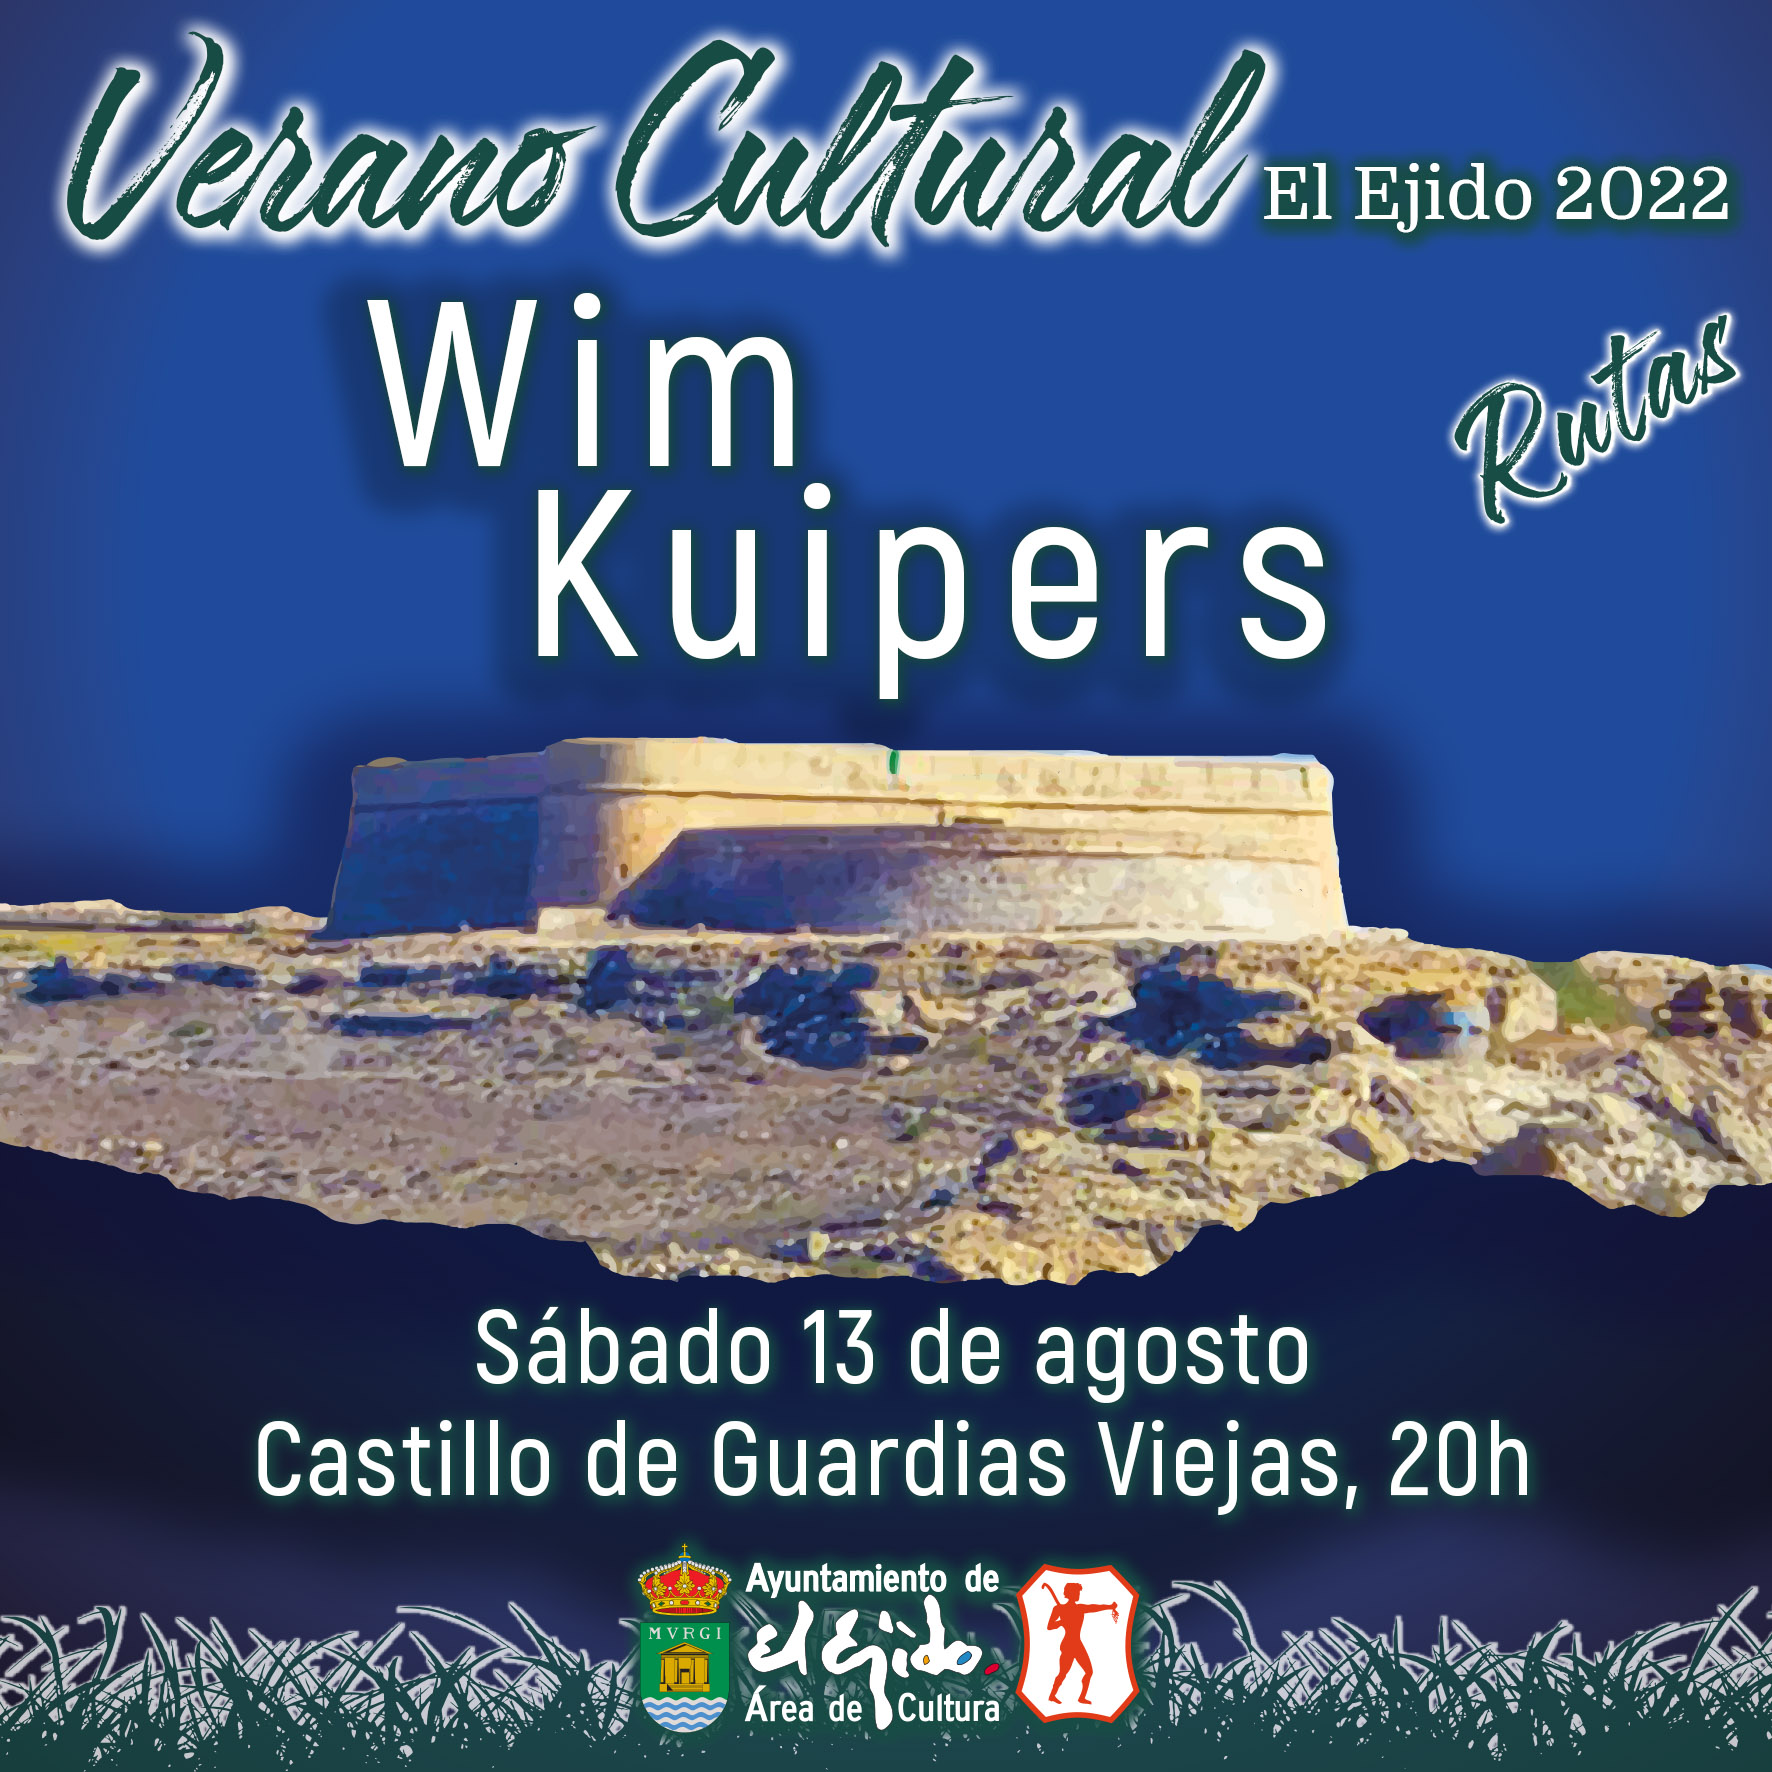 Verano Cultural 2022 de El Ejido – Rutas – Wim Kuipers – Sábado 13 de agosto